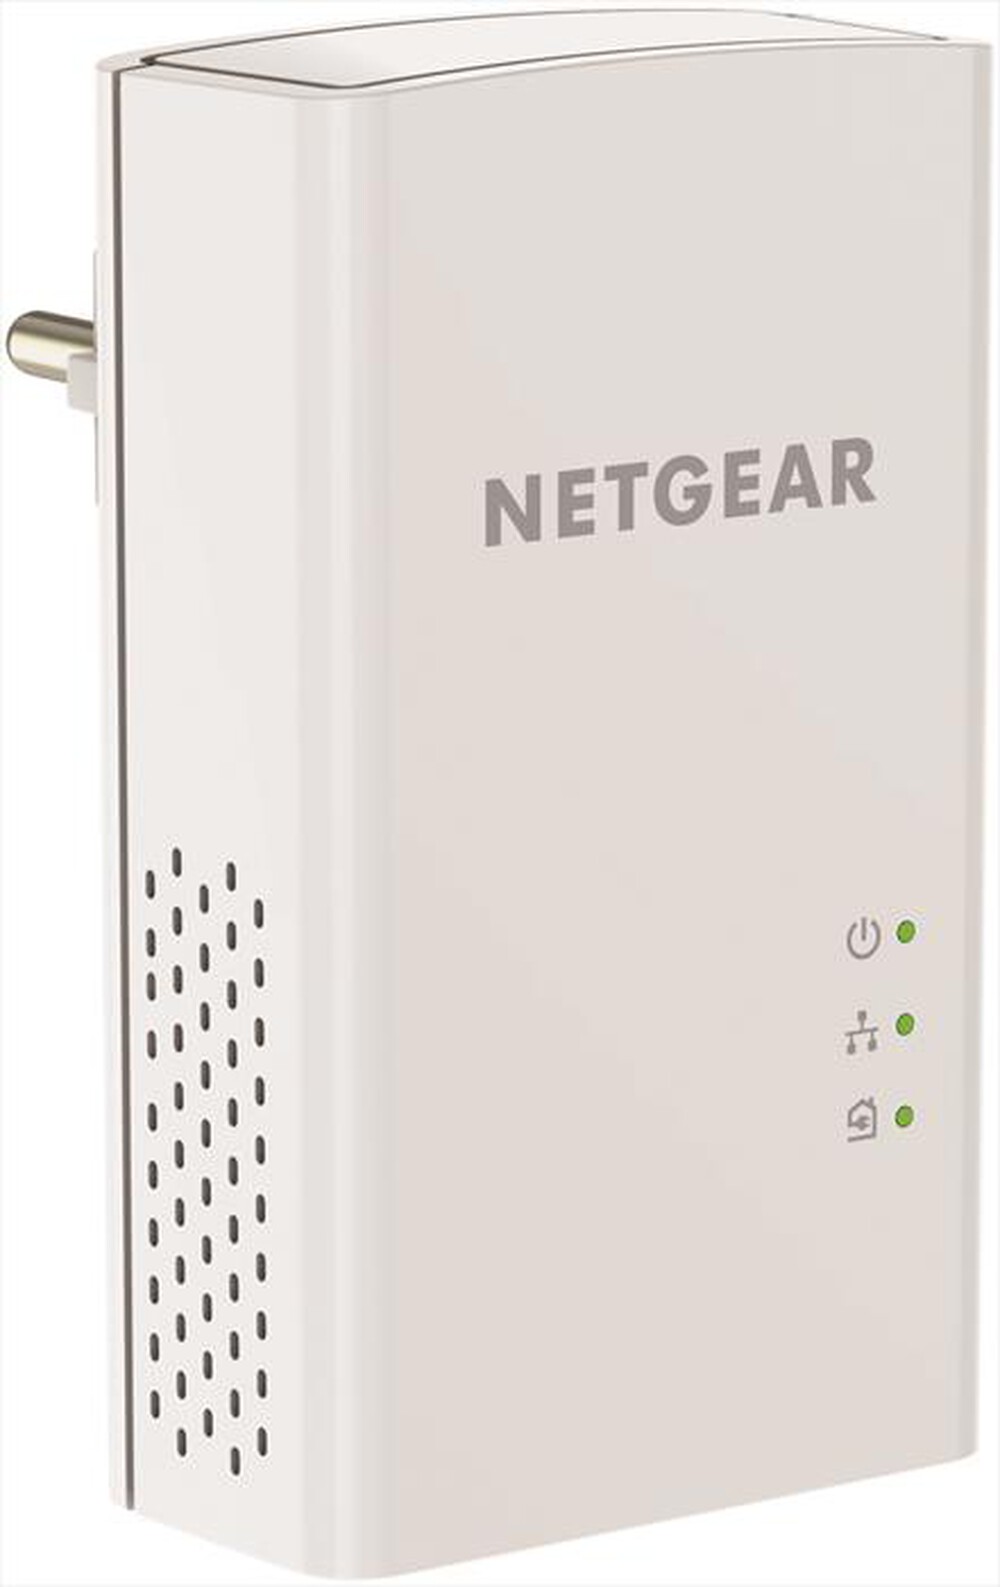 "NETGEAR - PL1200 Powerline 1200 1 Porta"